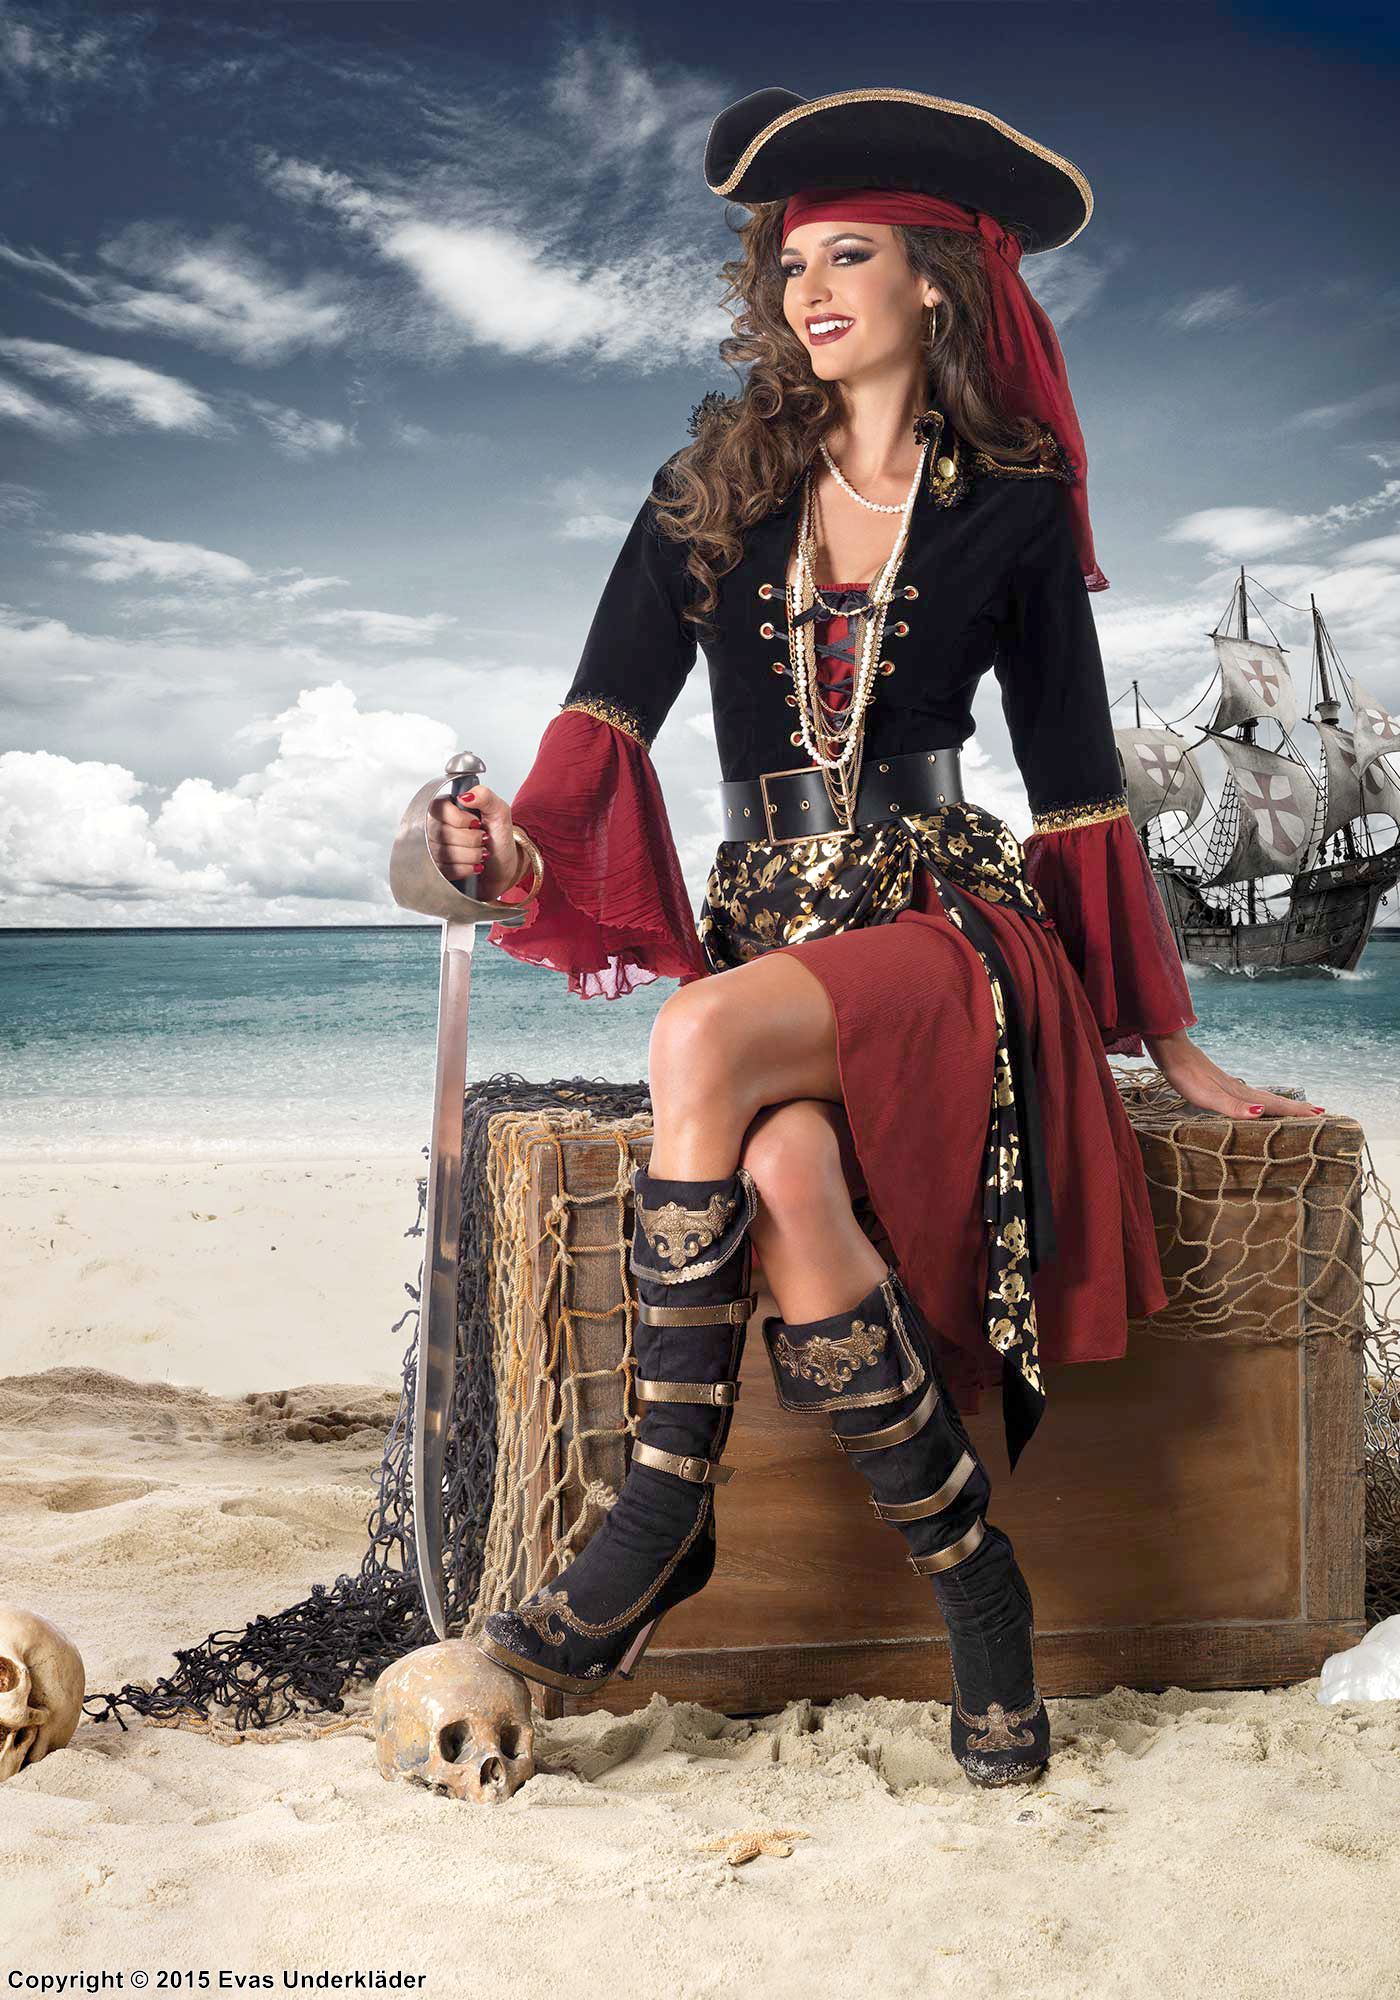 Weibliche Piratenkapitänin, Kostüm-Kleid, Schnürung, Schulterklappe, Totenköpfen, Samt